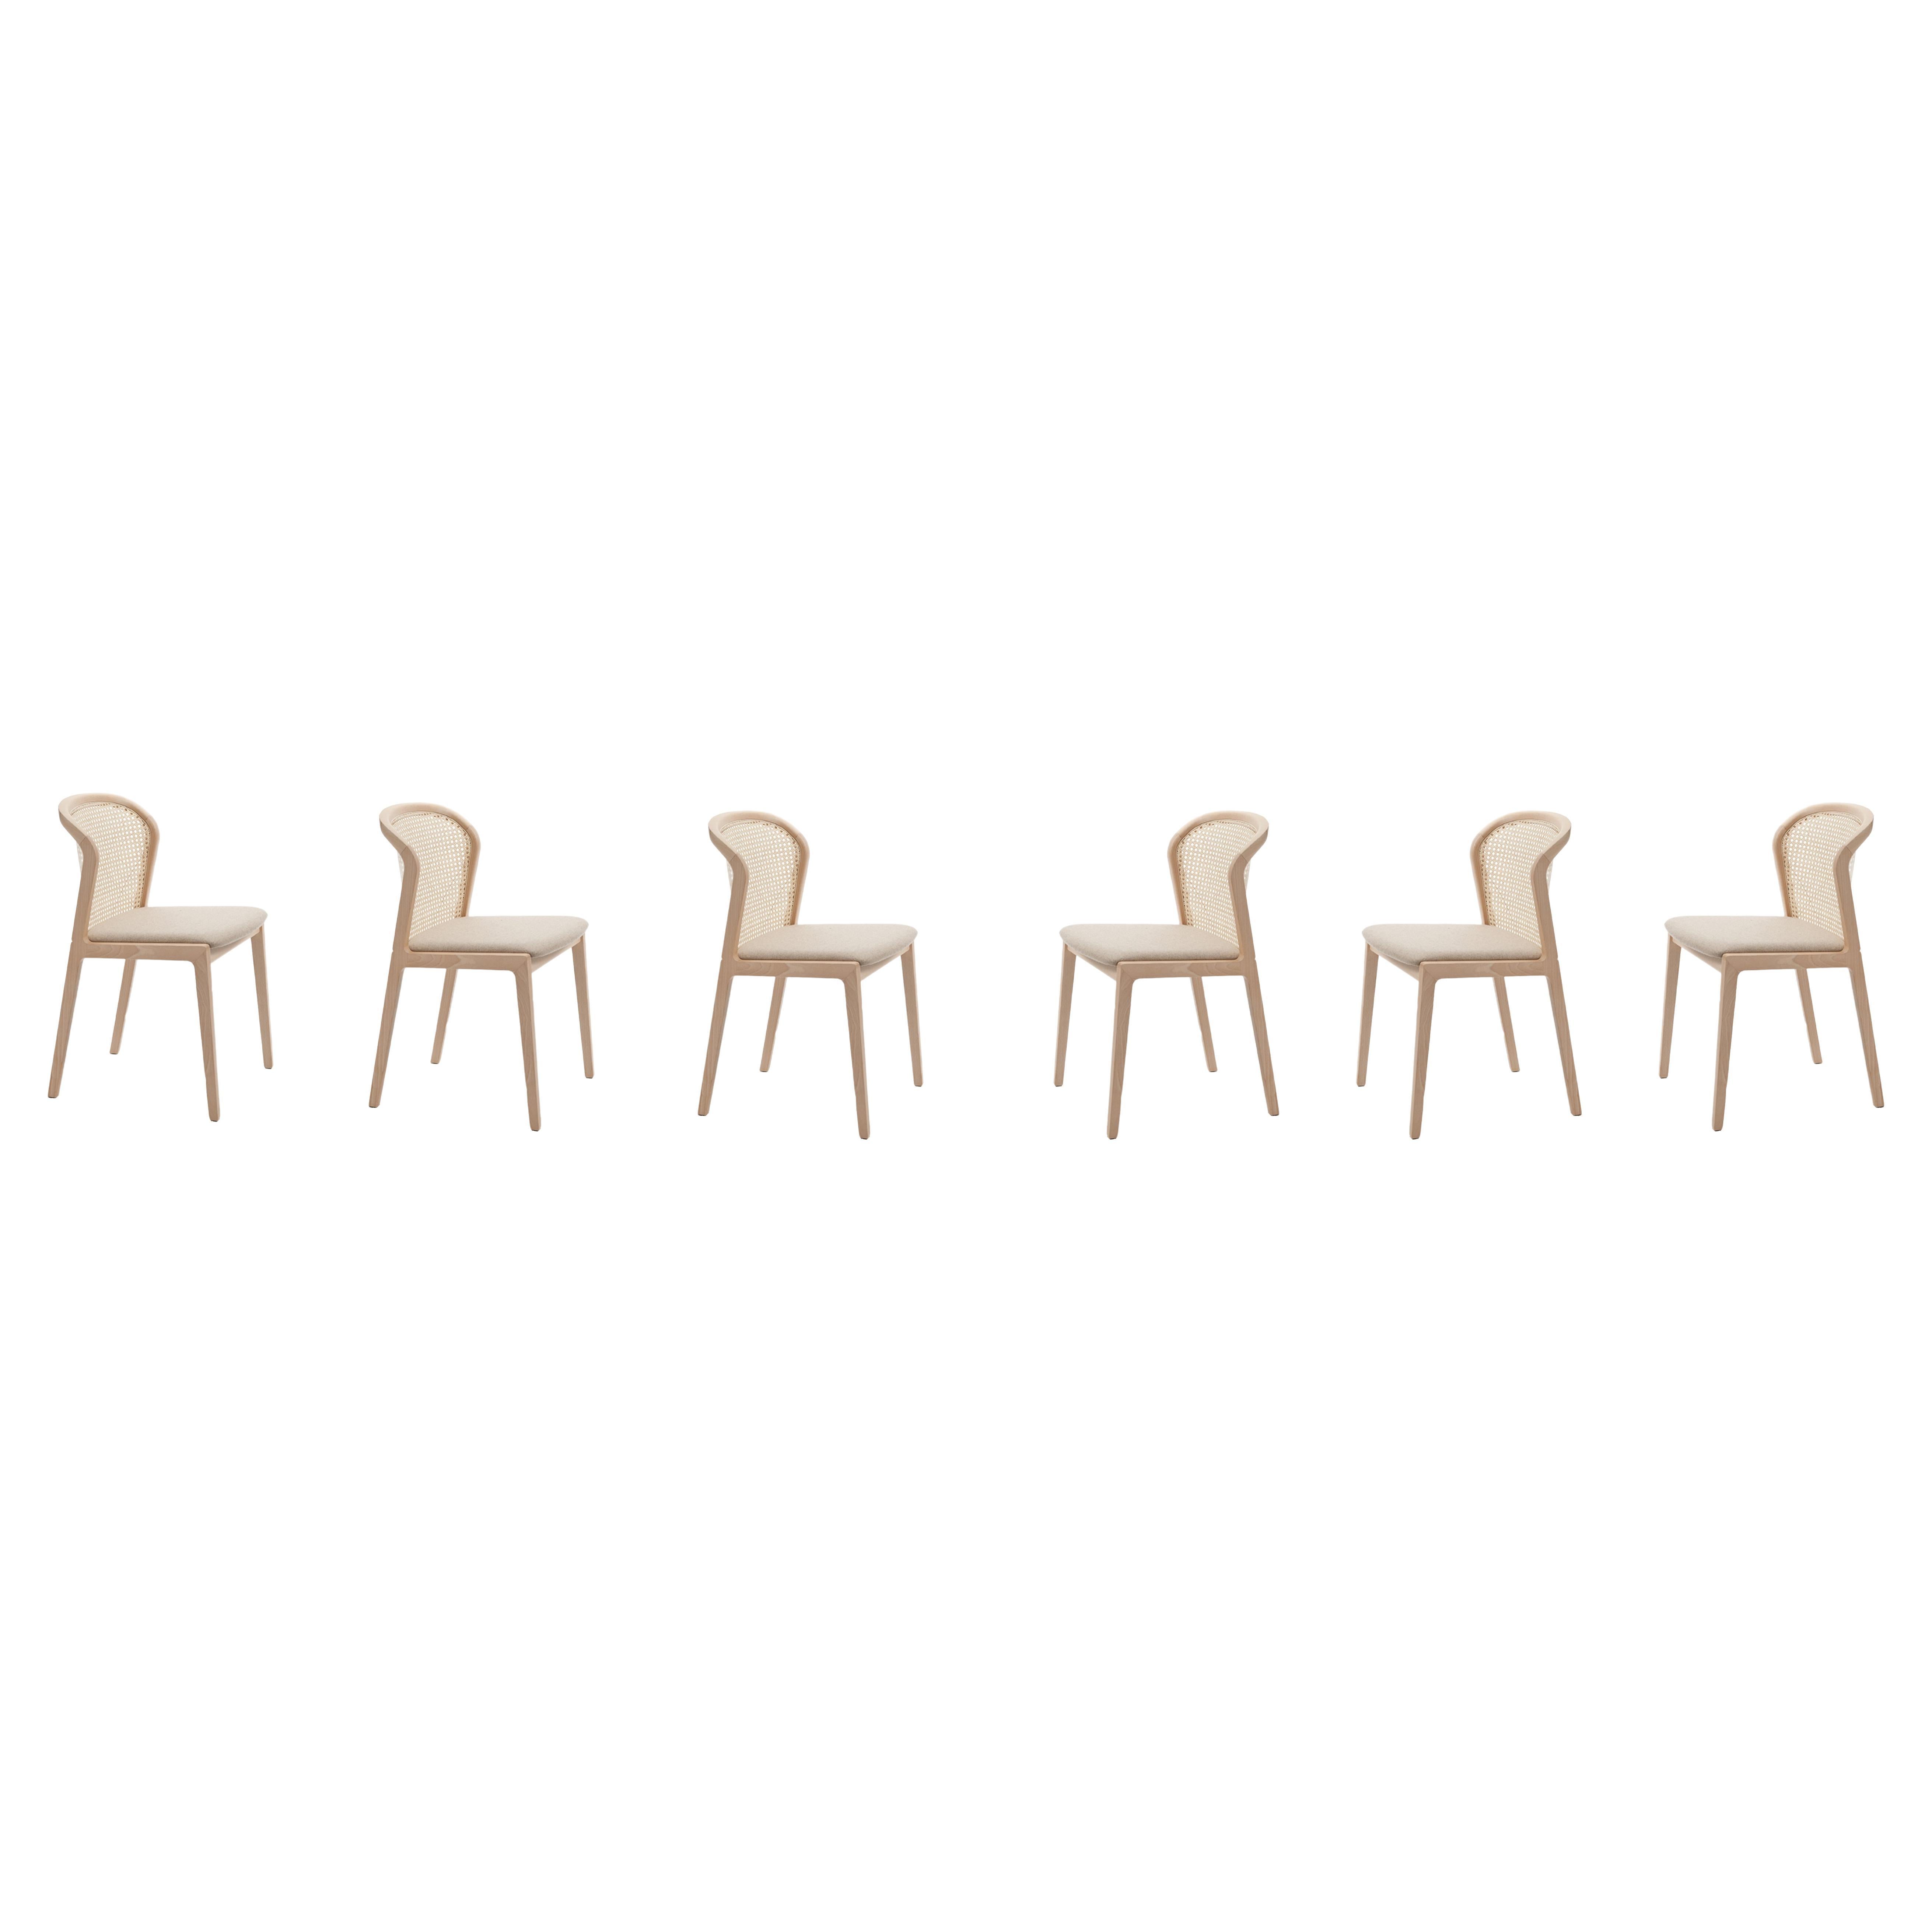 6 chaises Vienna en bois de hêtre et paille, siège rembourré beige, 100 % fabriquées en Italie